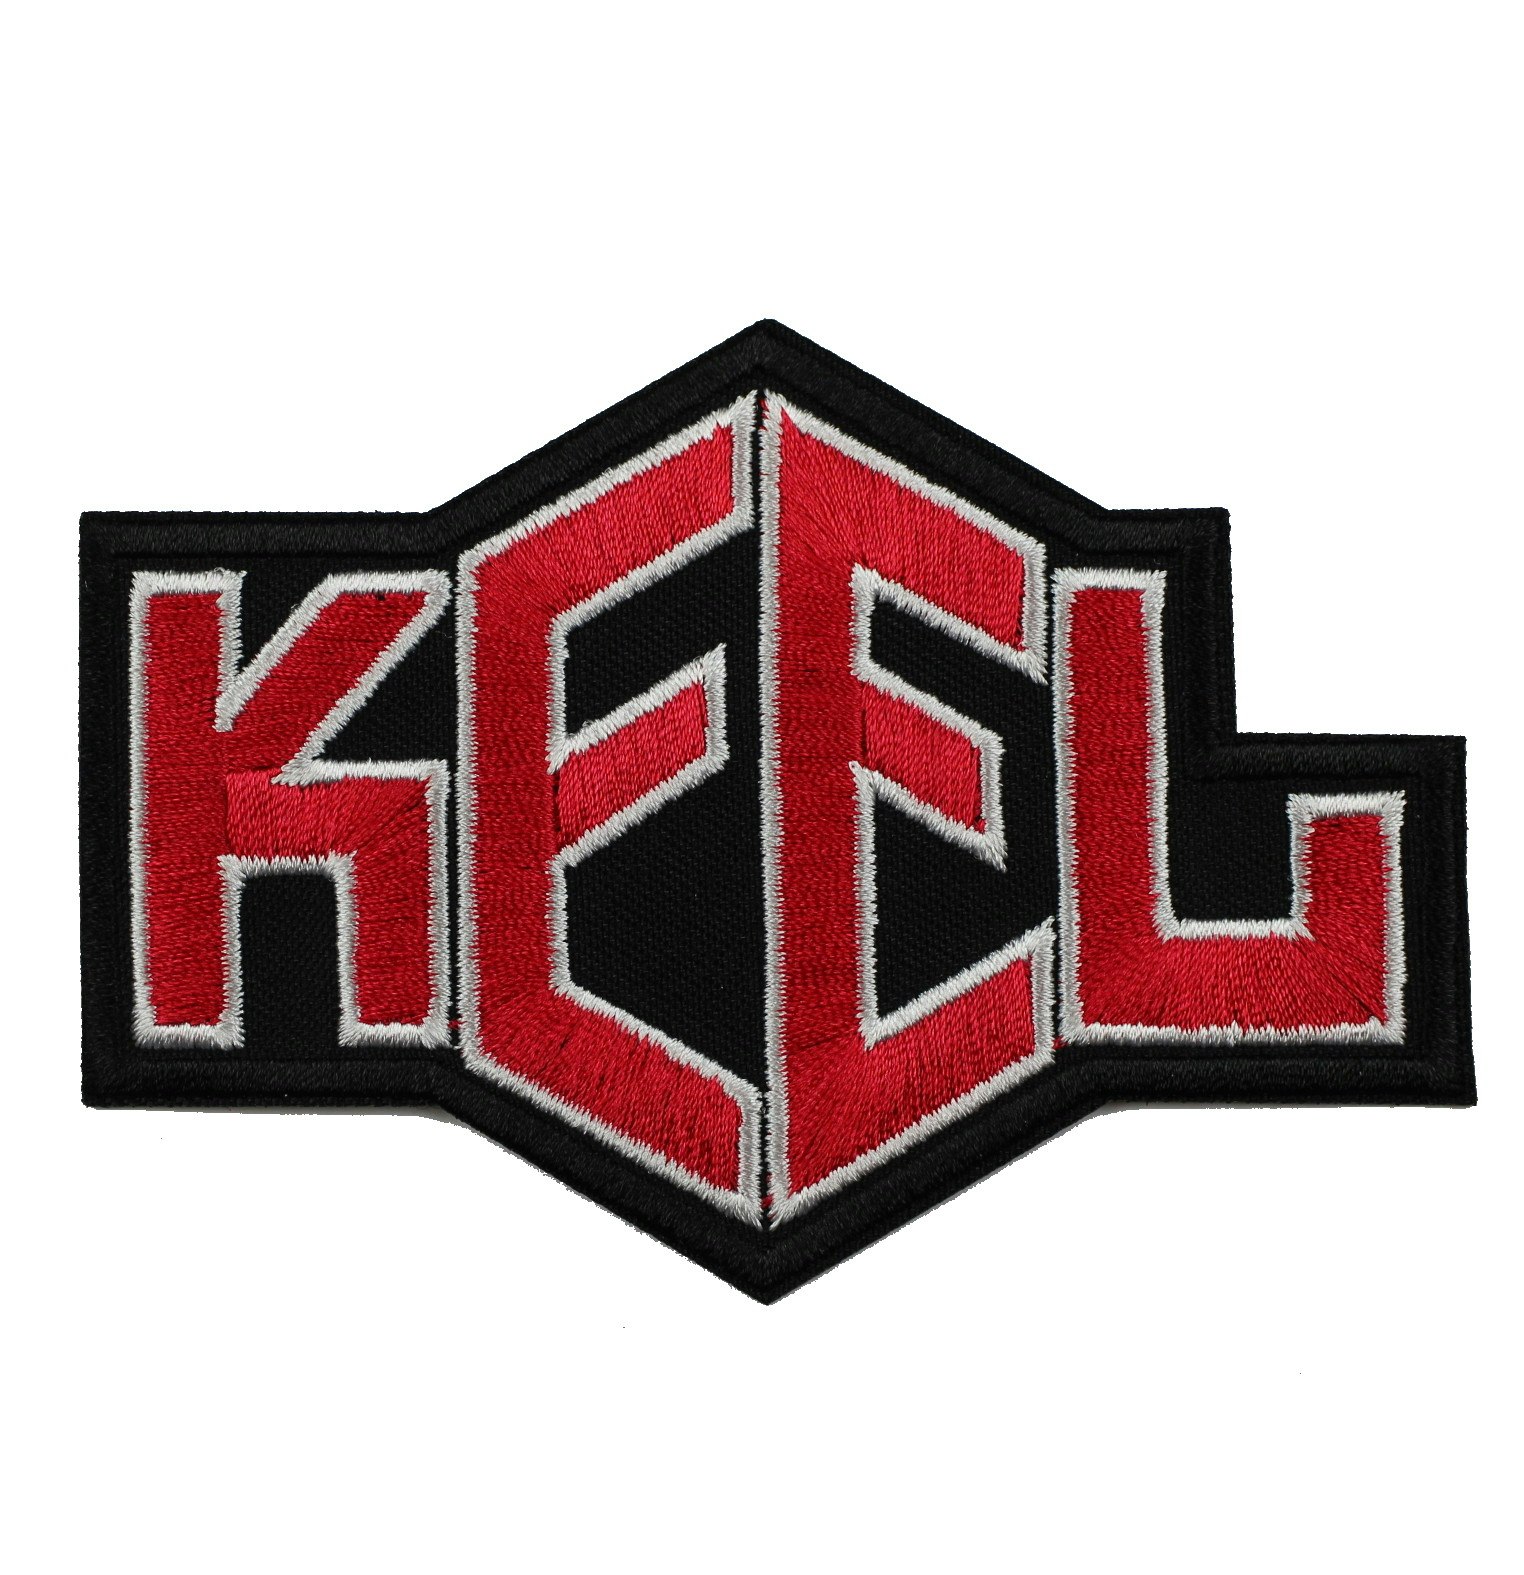 KEEL logo patch